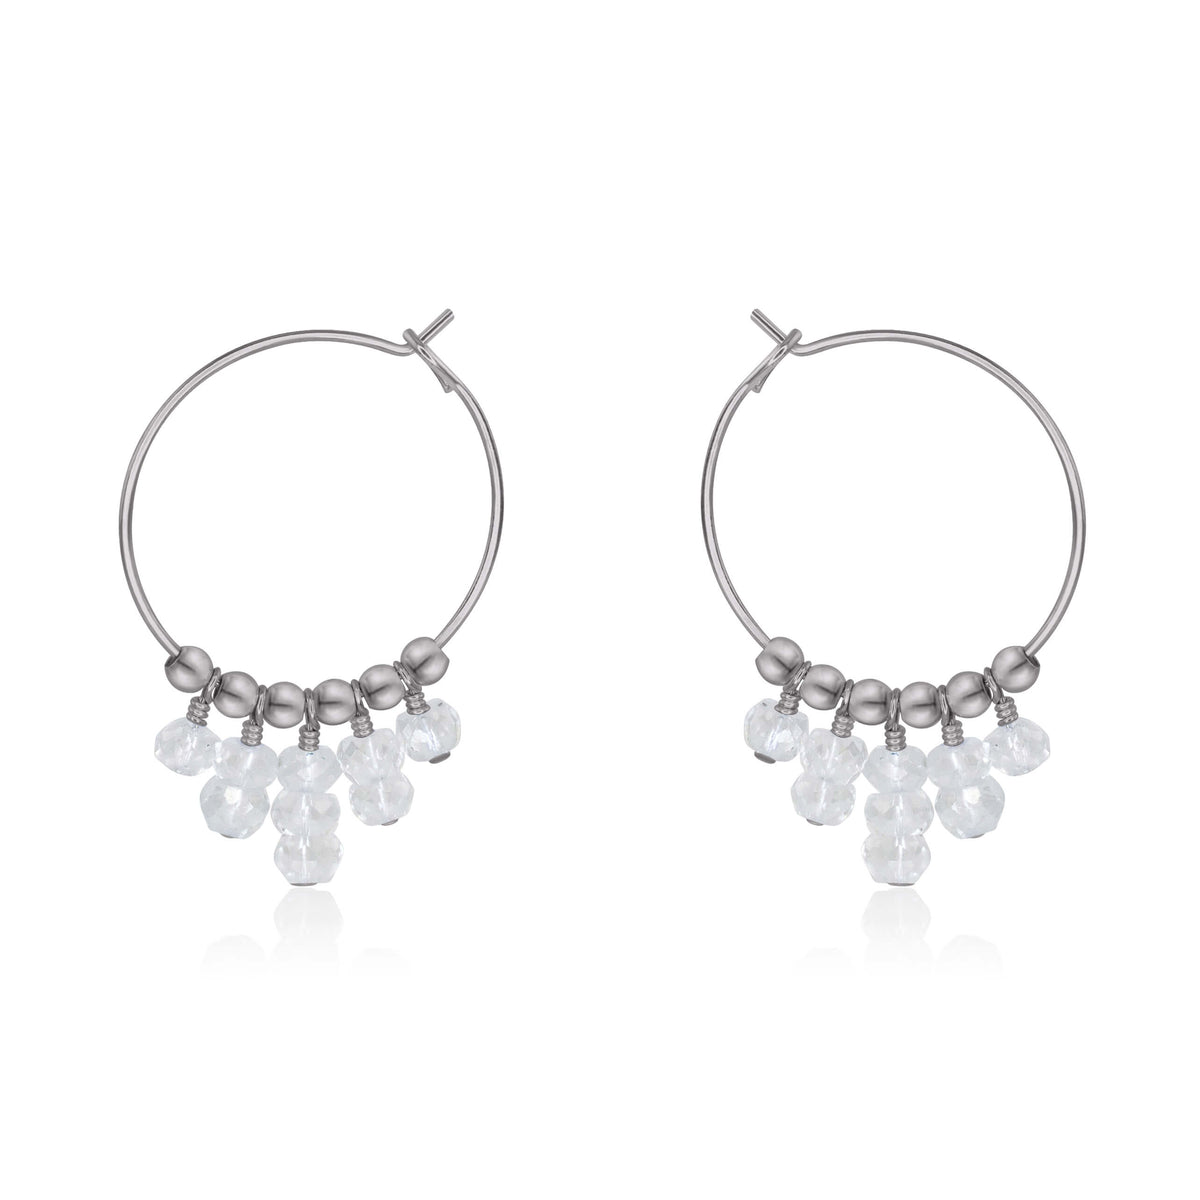 Hoop Earrings - Crystal Quartz - Stainless Steel - Luna Tide Handmade Jewellery